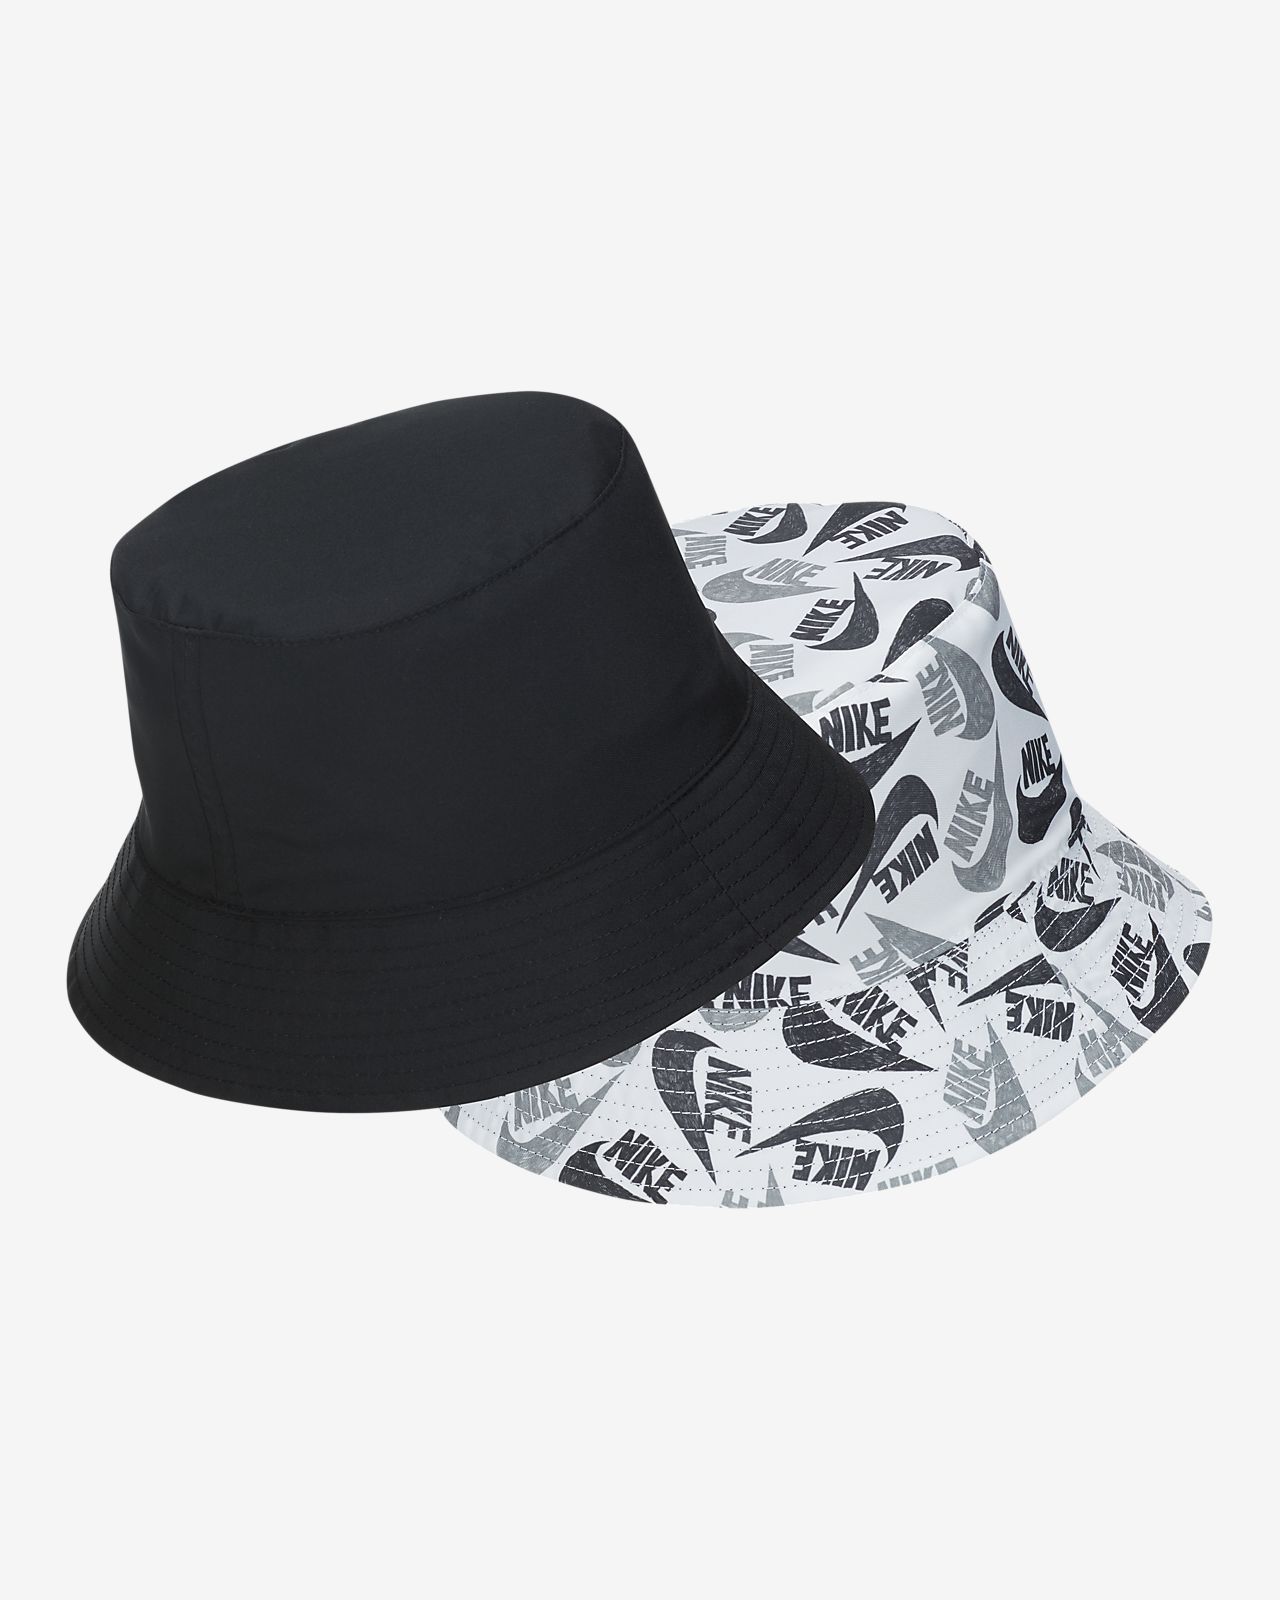 negro y blanco nike sombrero inexpensive e6563 139fa